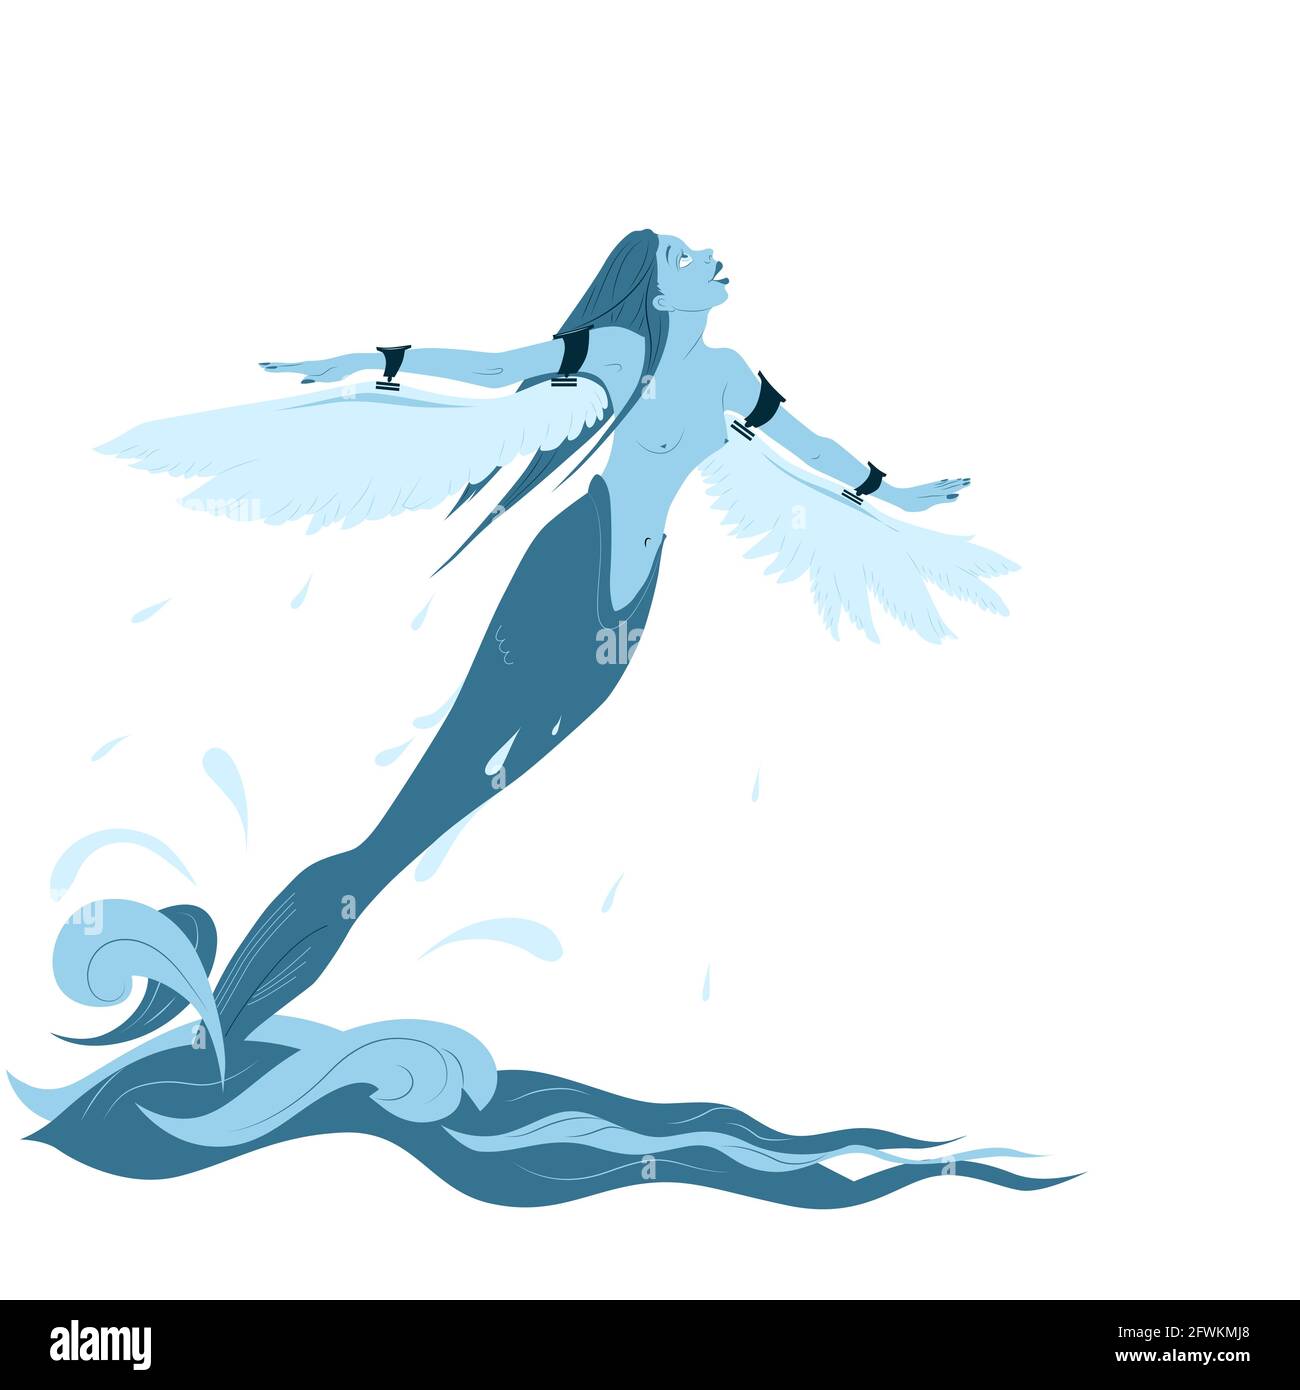 Die Stimmung ist zu fliegen! Meerjungfrau mit märchenhaften Charakter und angebrachten Flügeln hebt vom Meer ab. Das Konzept der Freiheit von Konventionen. Drucken, Tätowieren, Pos. Stock Vektor